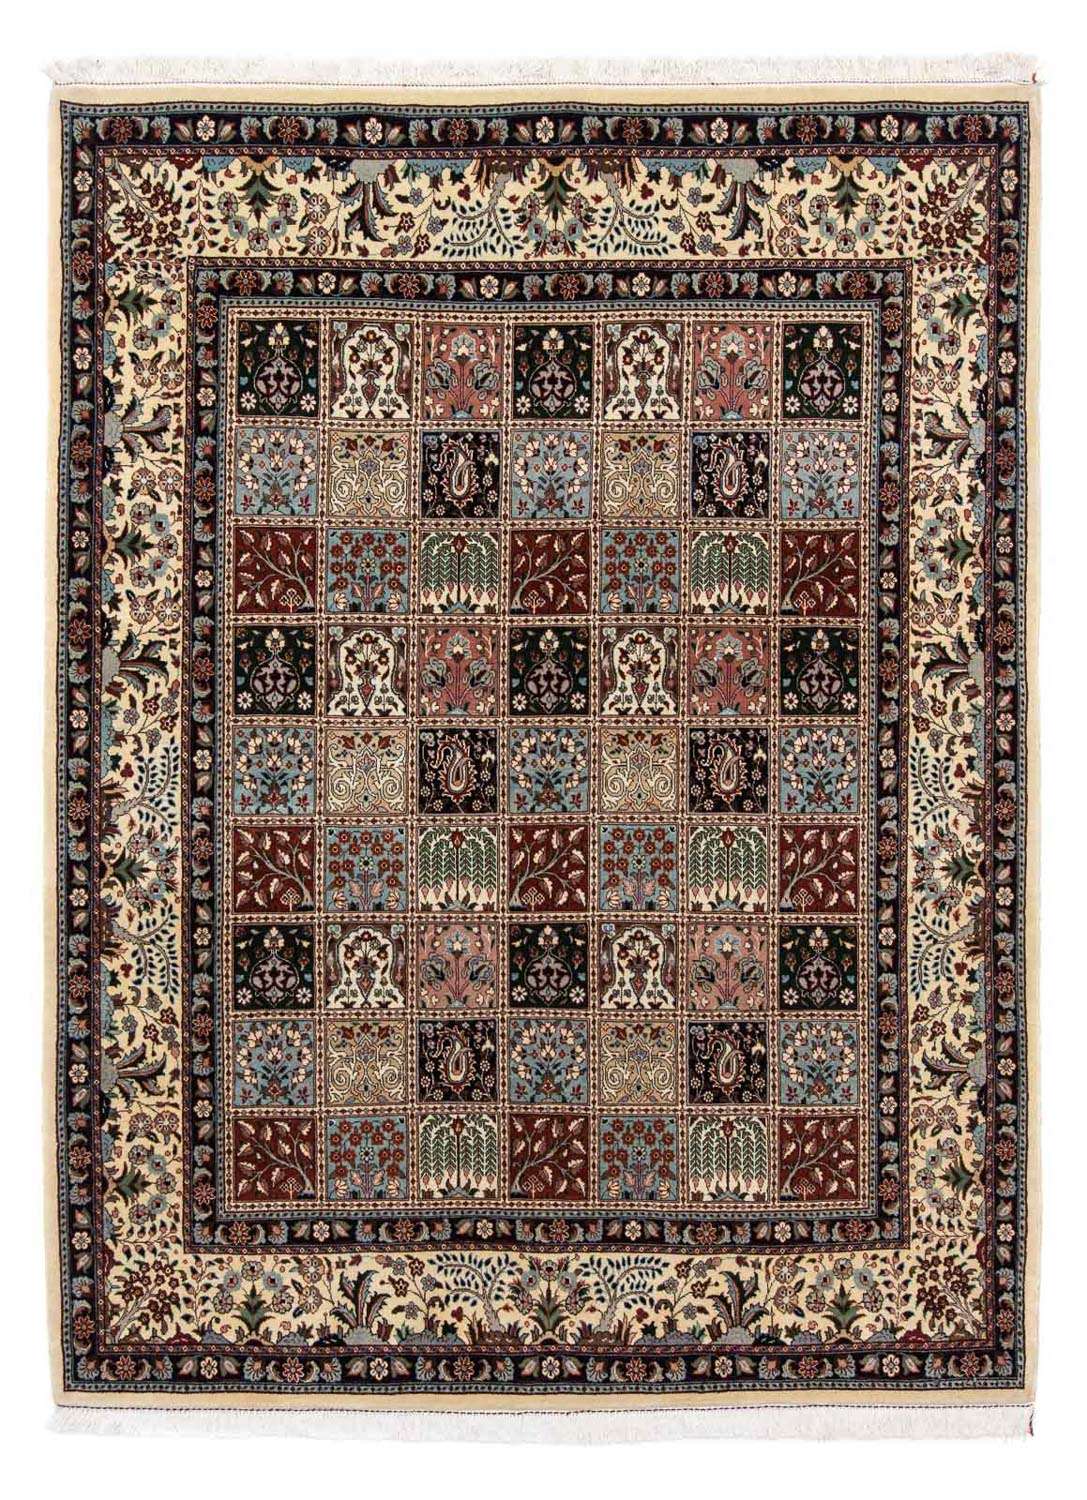 Tapis persan - Classique - 242 x 184 cm - multicolore